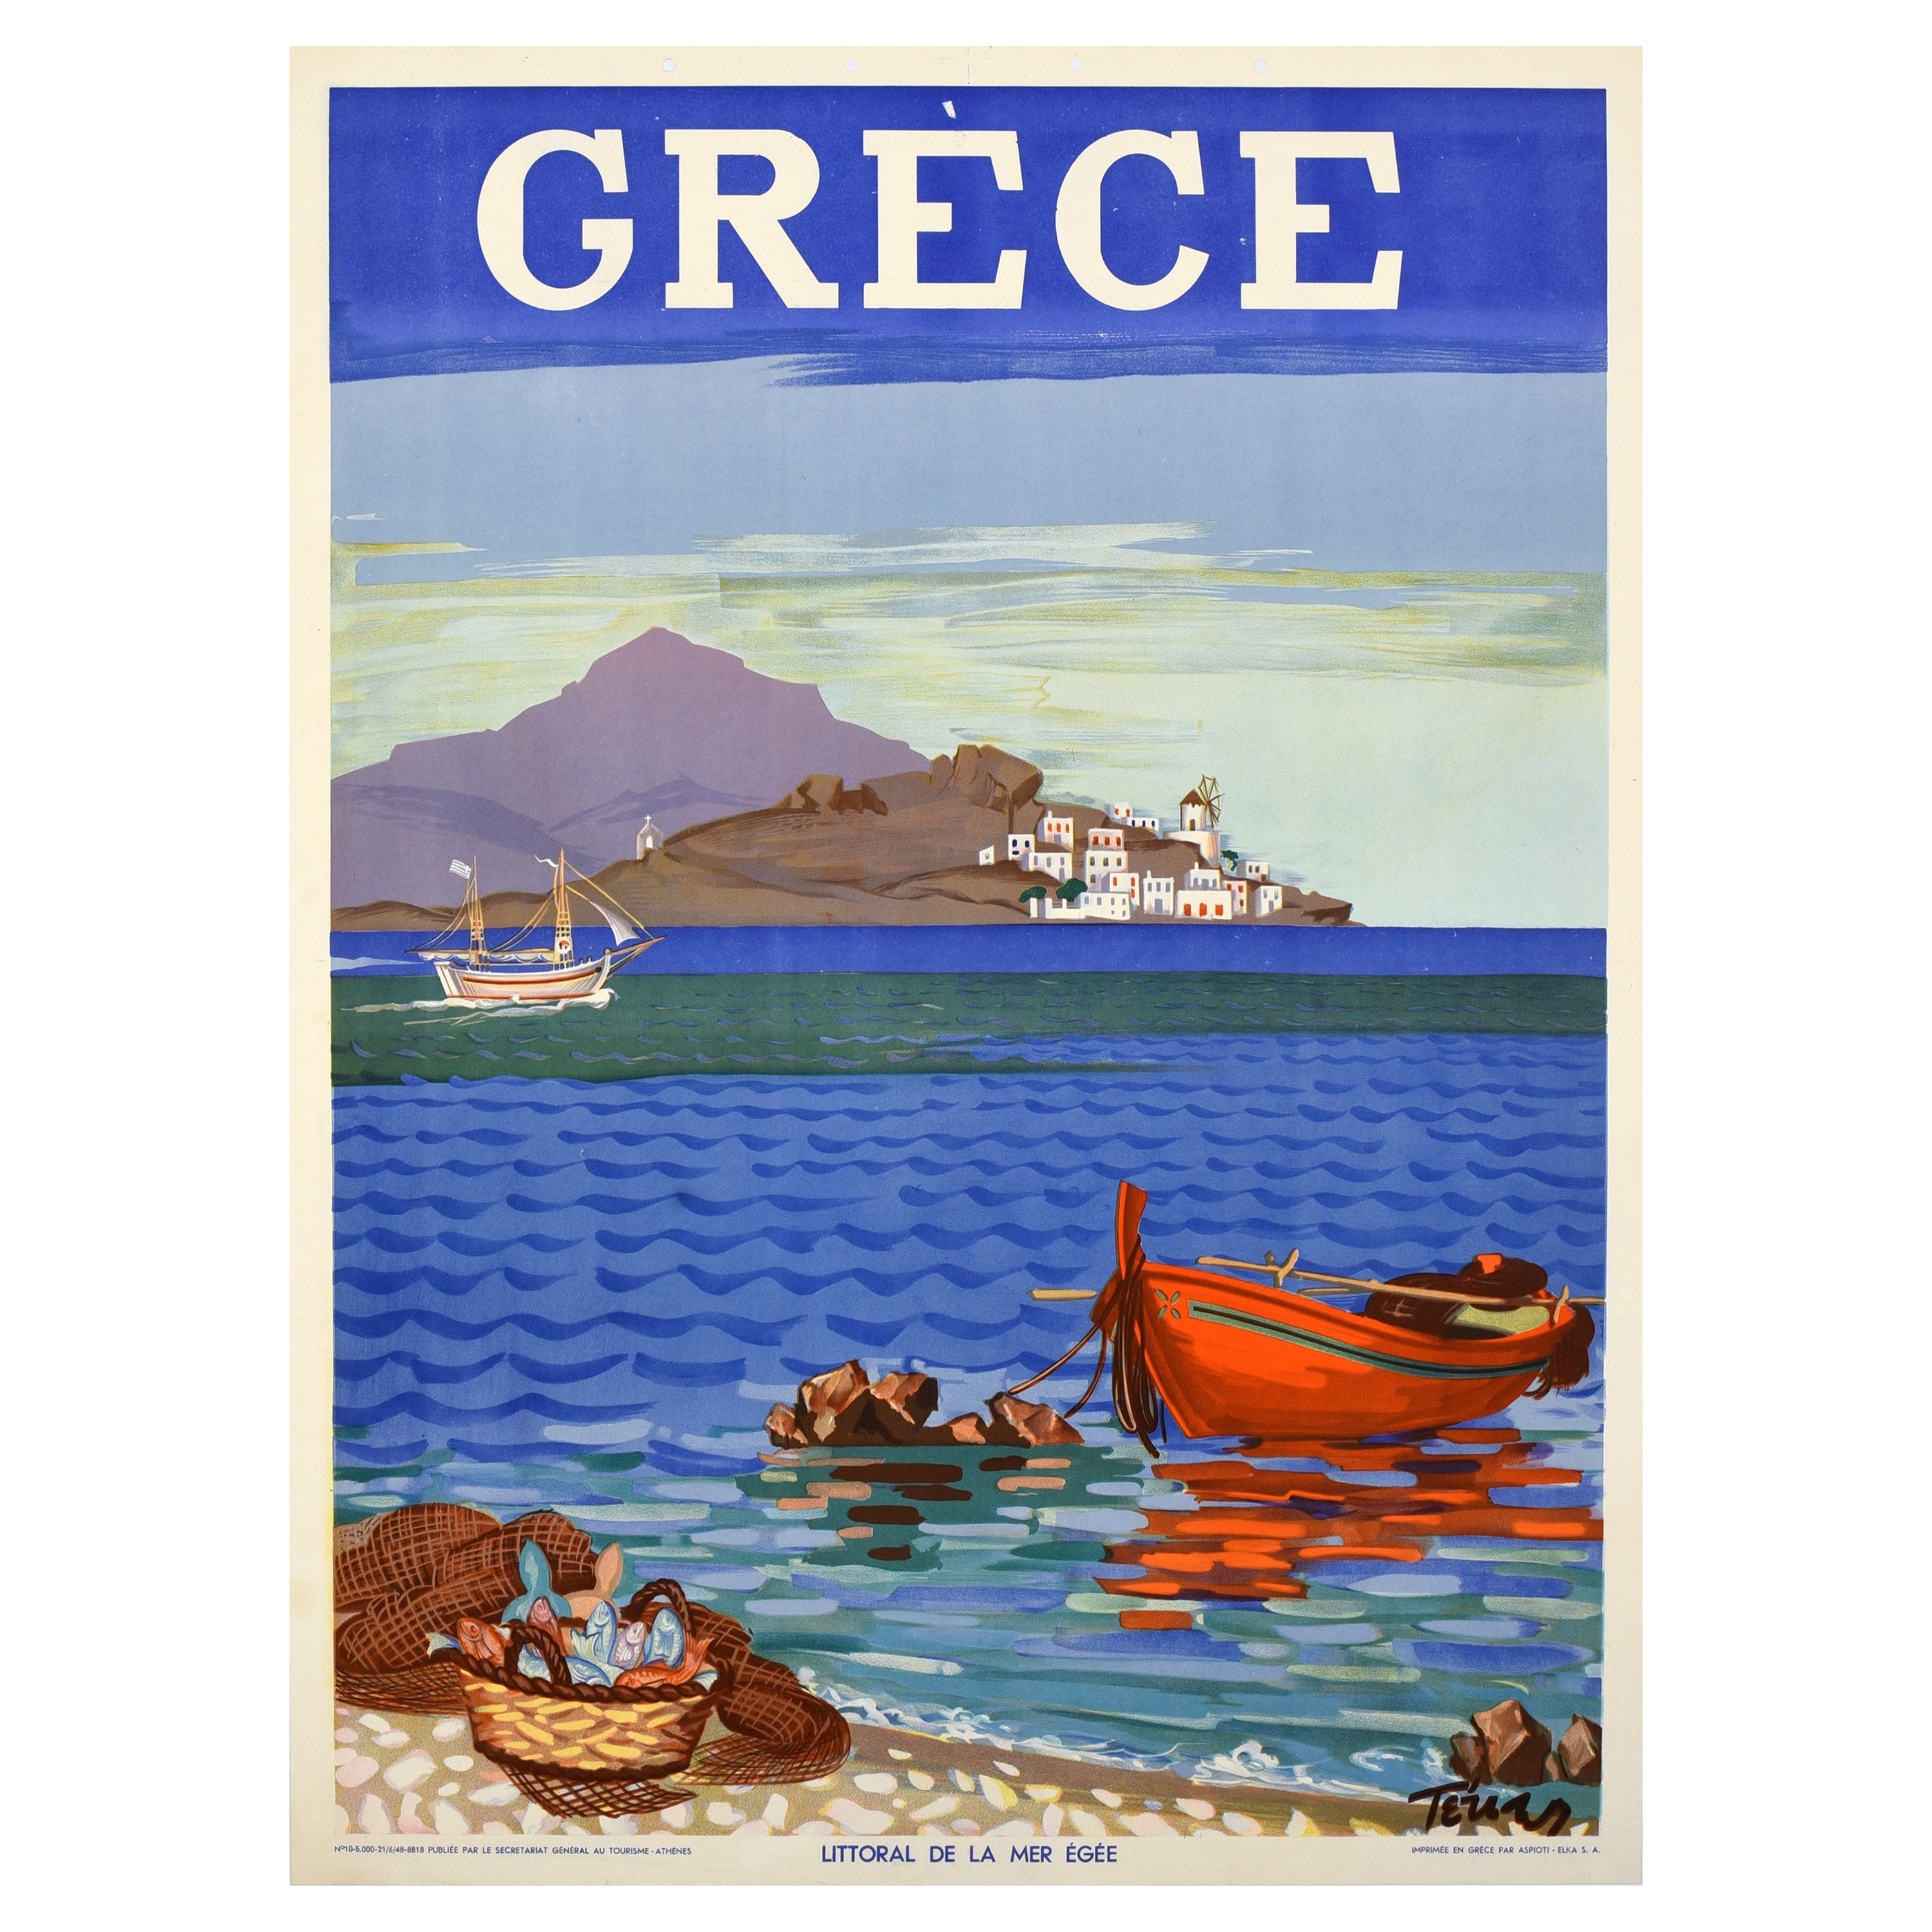 Original Vintage Travel Poster Greece Grece Aegean Coast Mediterranean Sea 